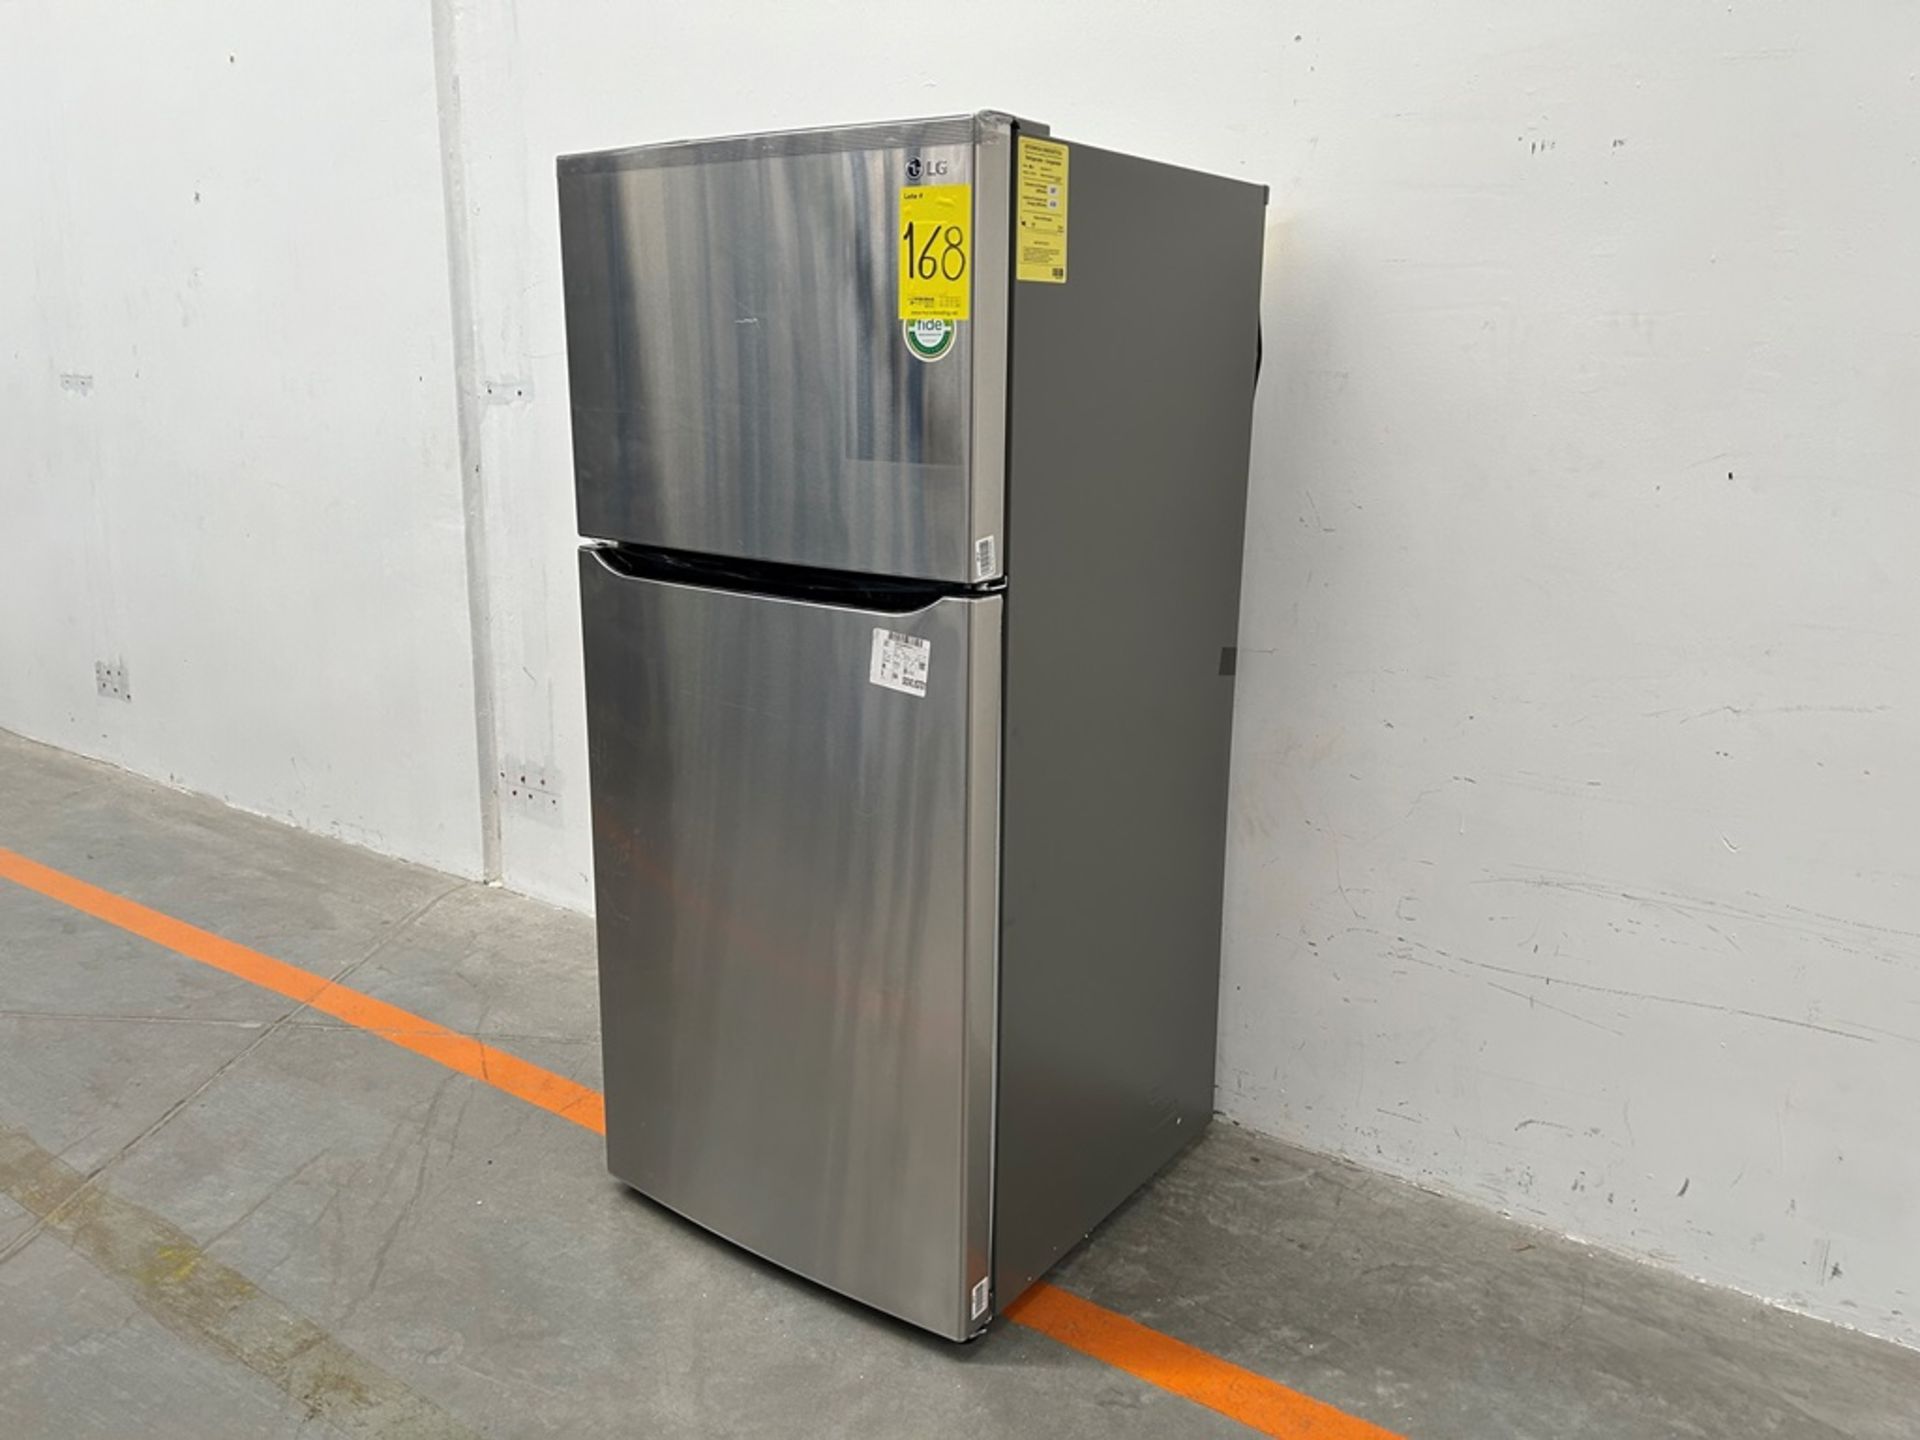 (NUEVO) Refrigerador Marca LG, Modelo LT57BPSX, Serie 29679, Color GRIS - Image 2 of 11